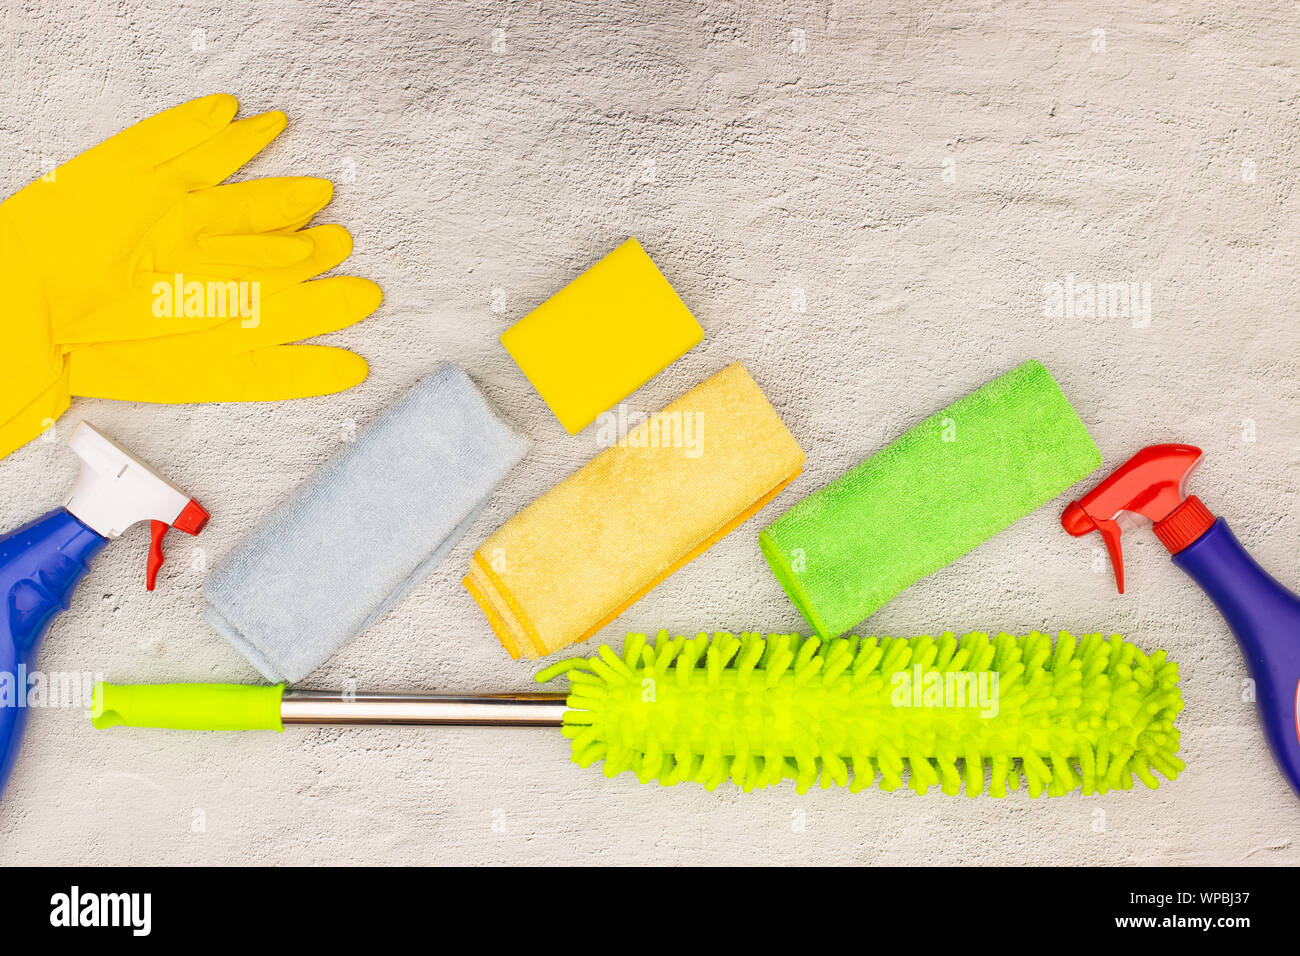 Trucs de nettoyage et produits de nettoyage maison sur la table Photo Stock  - Alamy